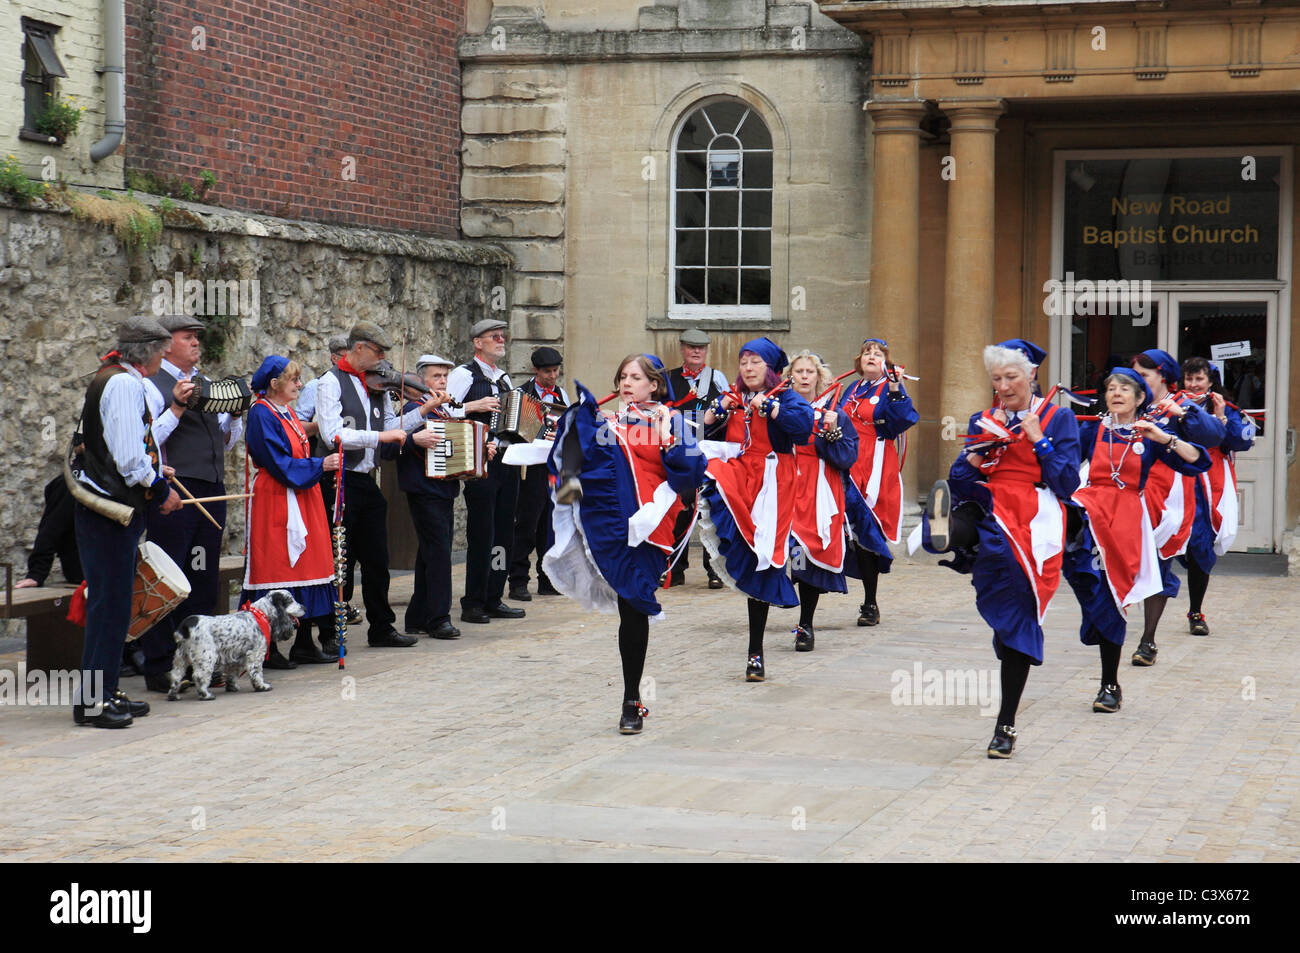 Danseurs et musiciens Morris à Oxford folk festival près de la nouvelle route Baptist Church, England, UK Banque D'Images